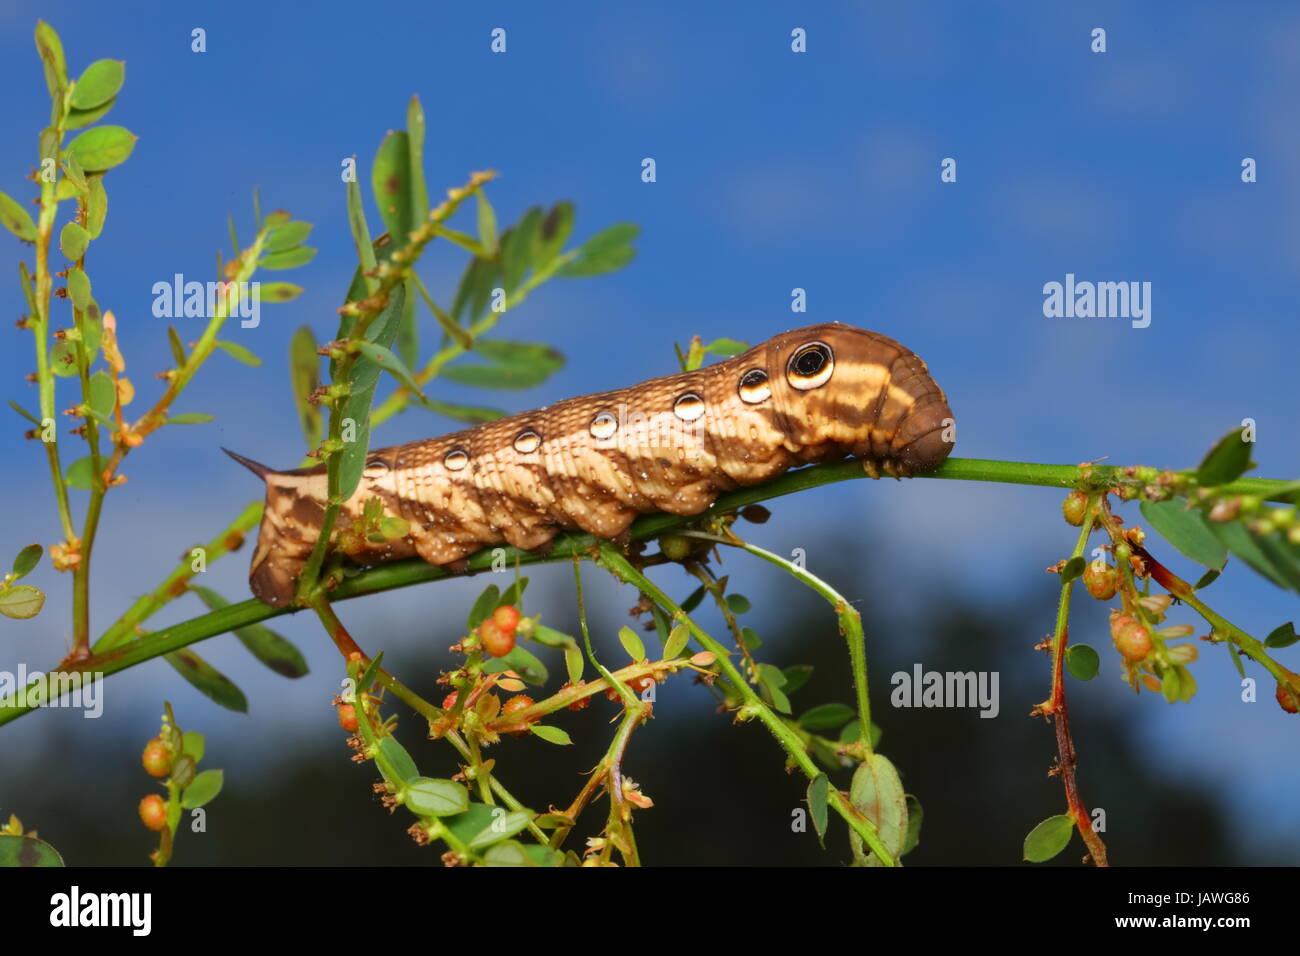 Une espèce de shinx tersa, Caterpillar tersa, rampant sur * * une tige de la plante. Banque D'Images